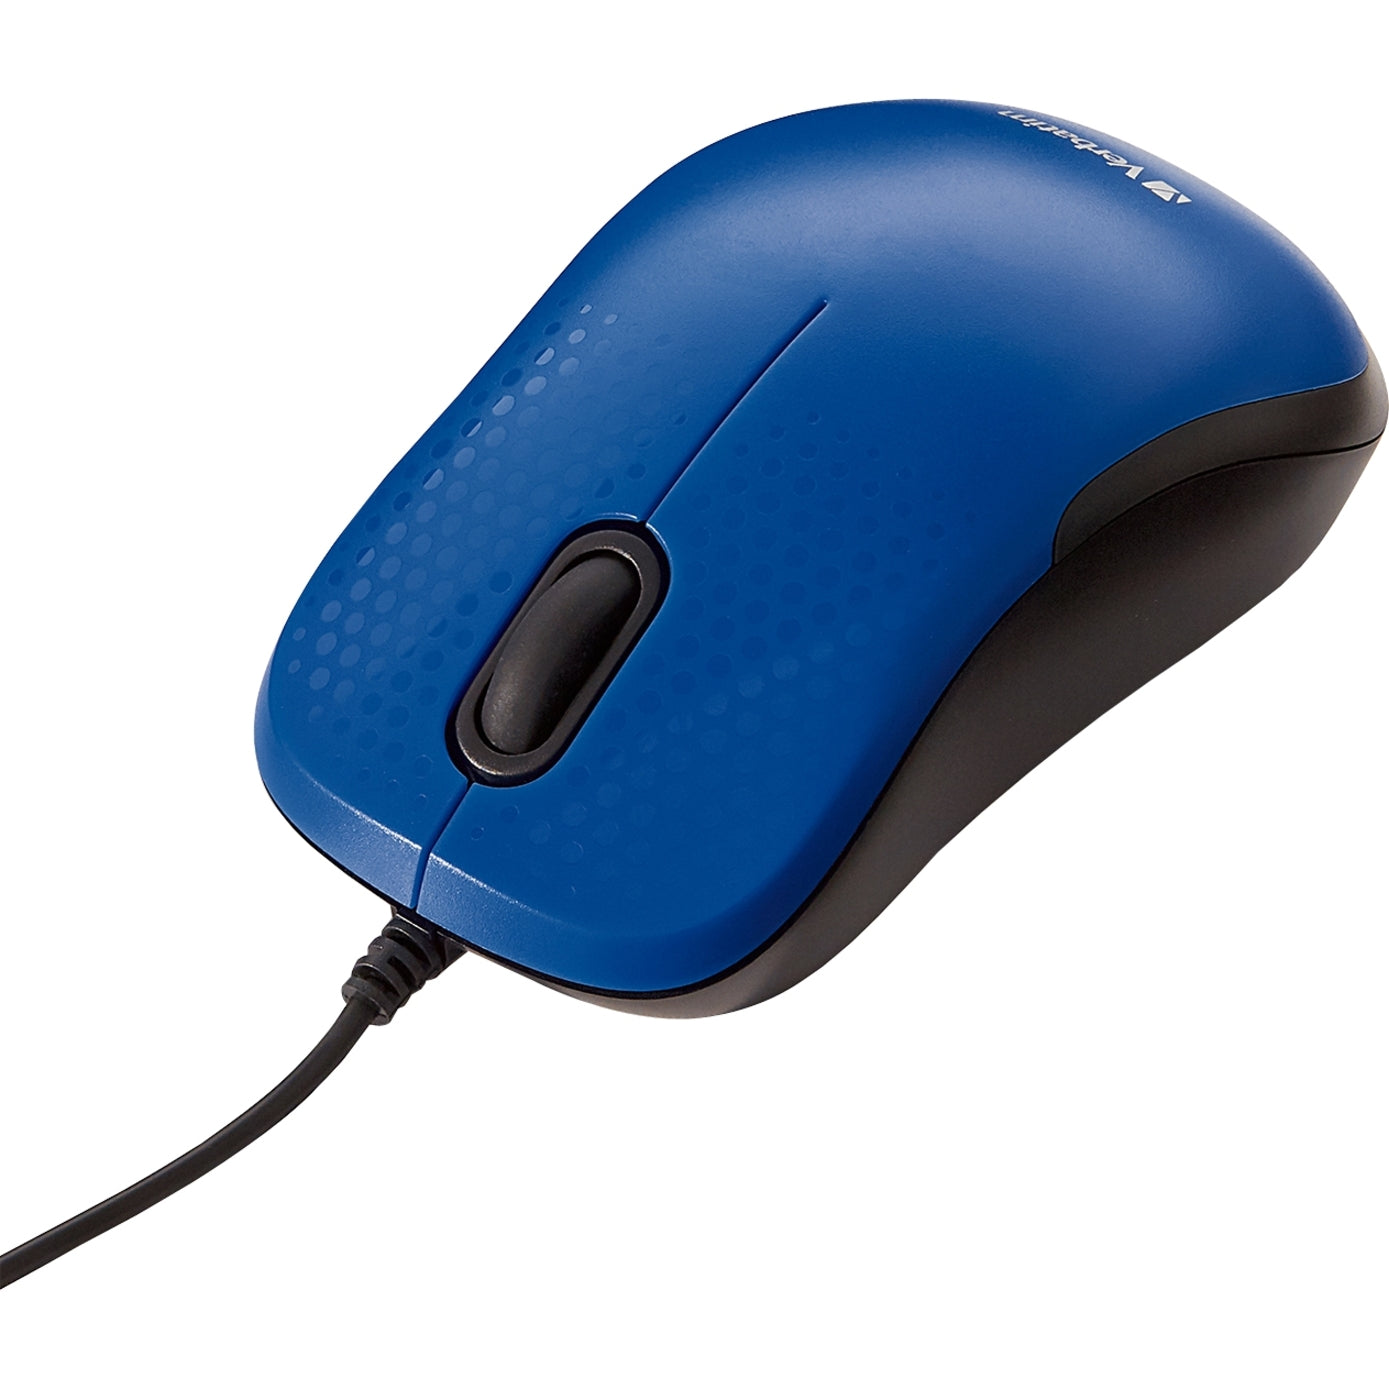 Verbatim 70233 Leiser Kabelgebundener Optischer Maus - Blau USB Scrollrad 1 Jahr Garantie